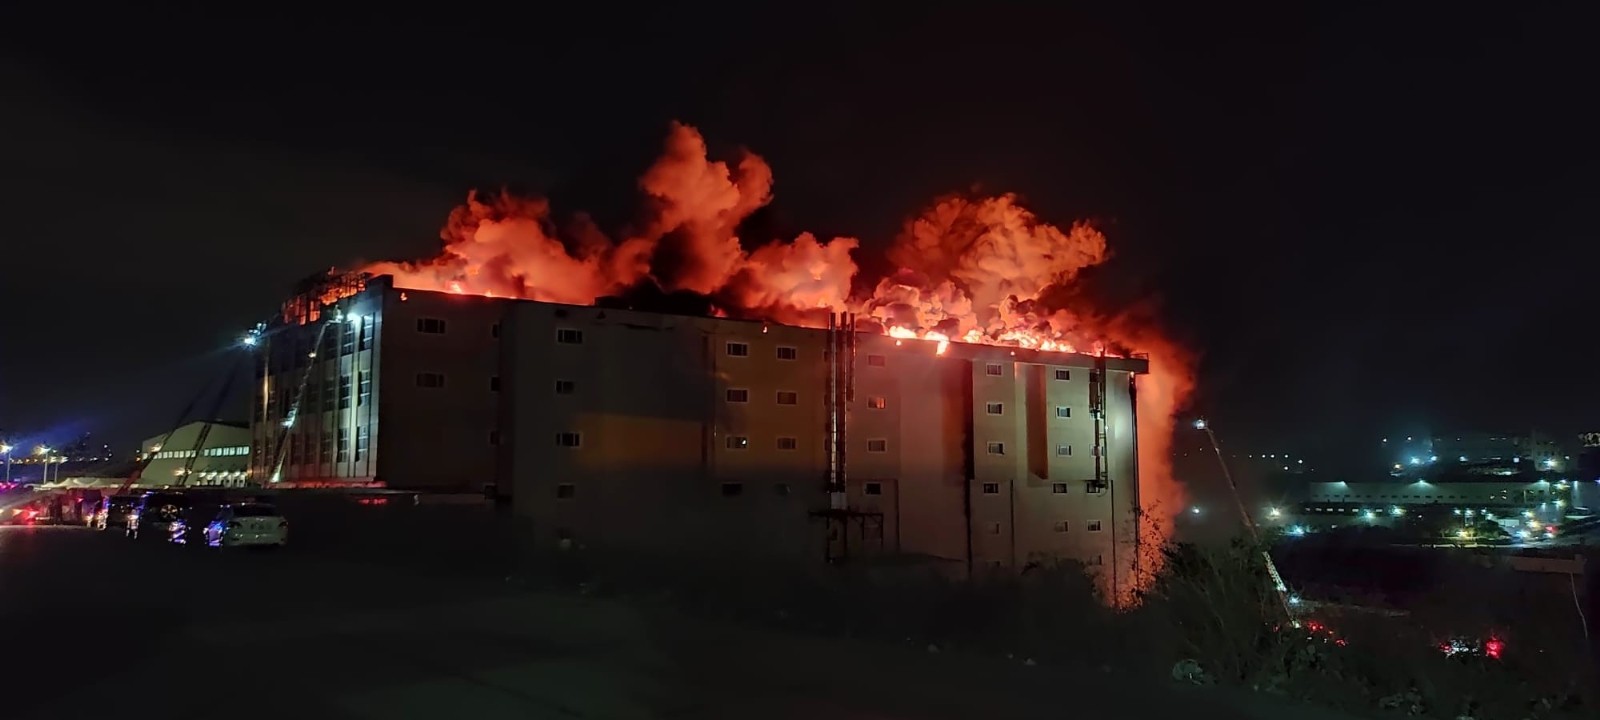 Arnavutköy’de 4 katlı tekstil fabrikasının çatısında çıkan yangın devam ediyor